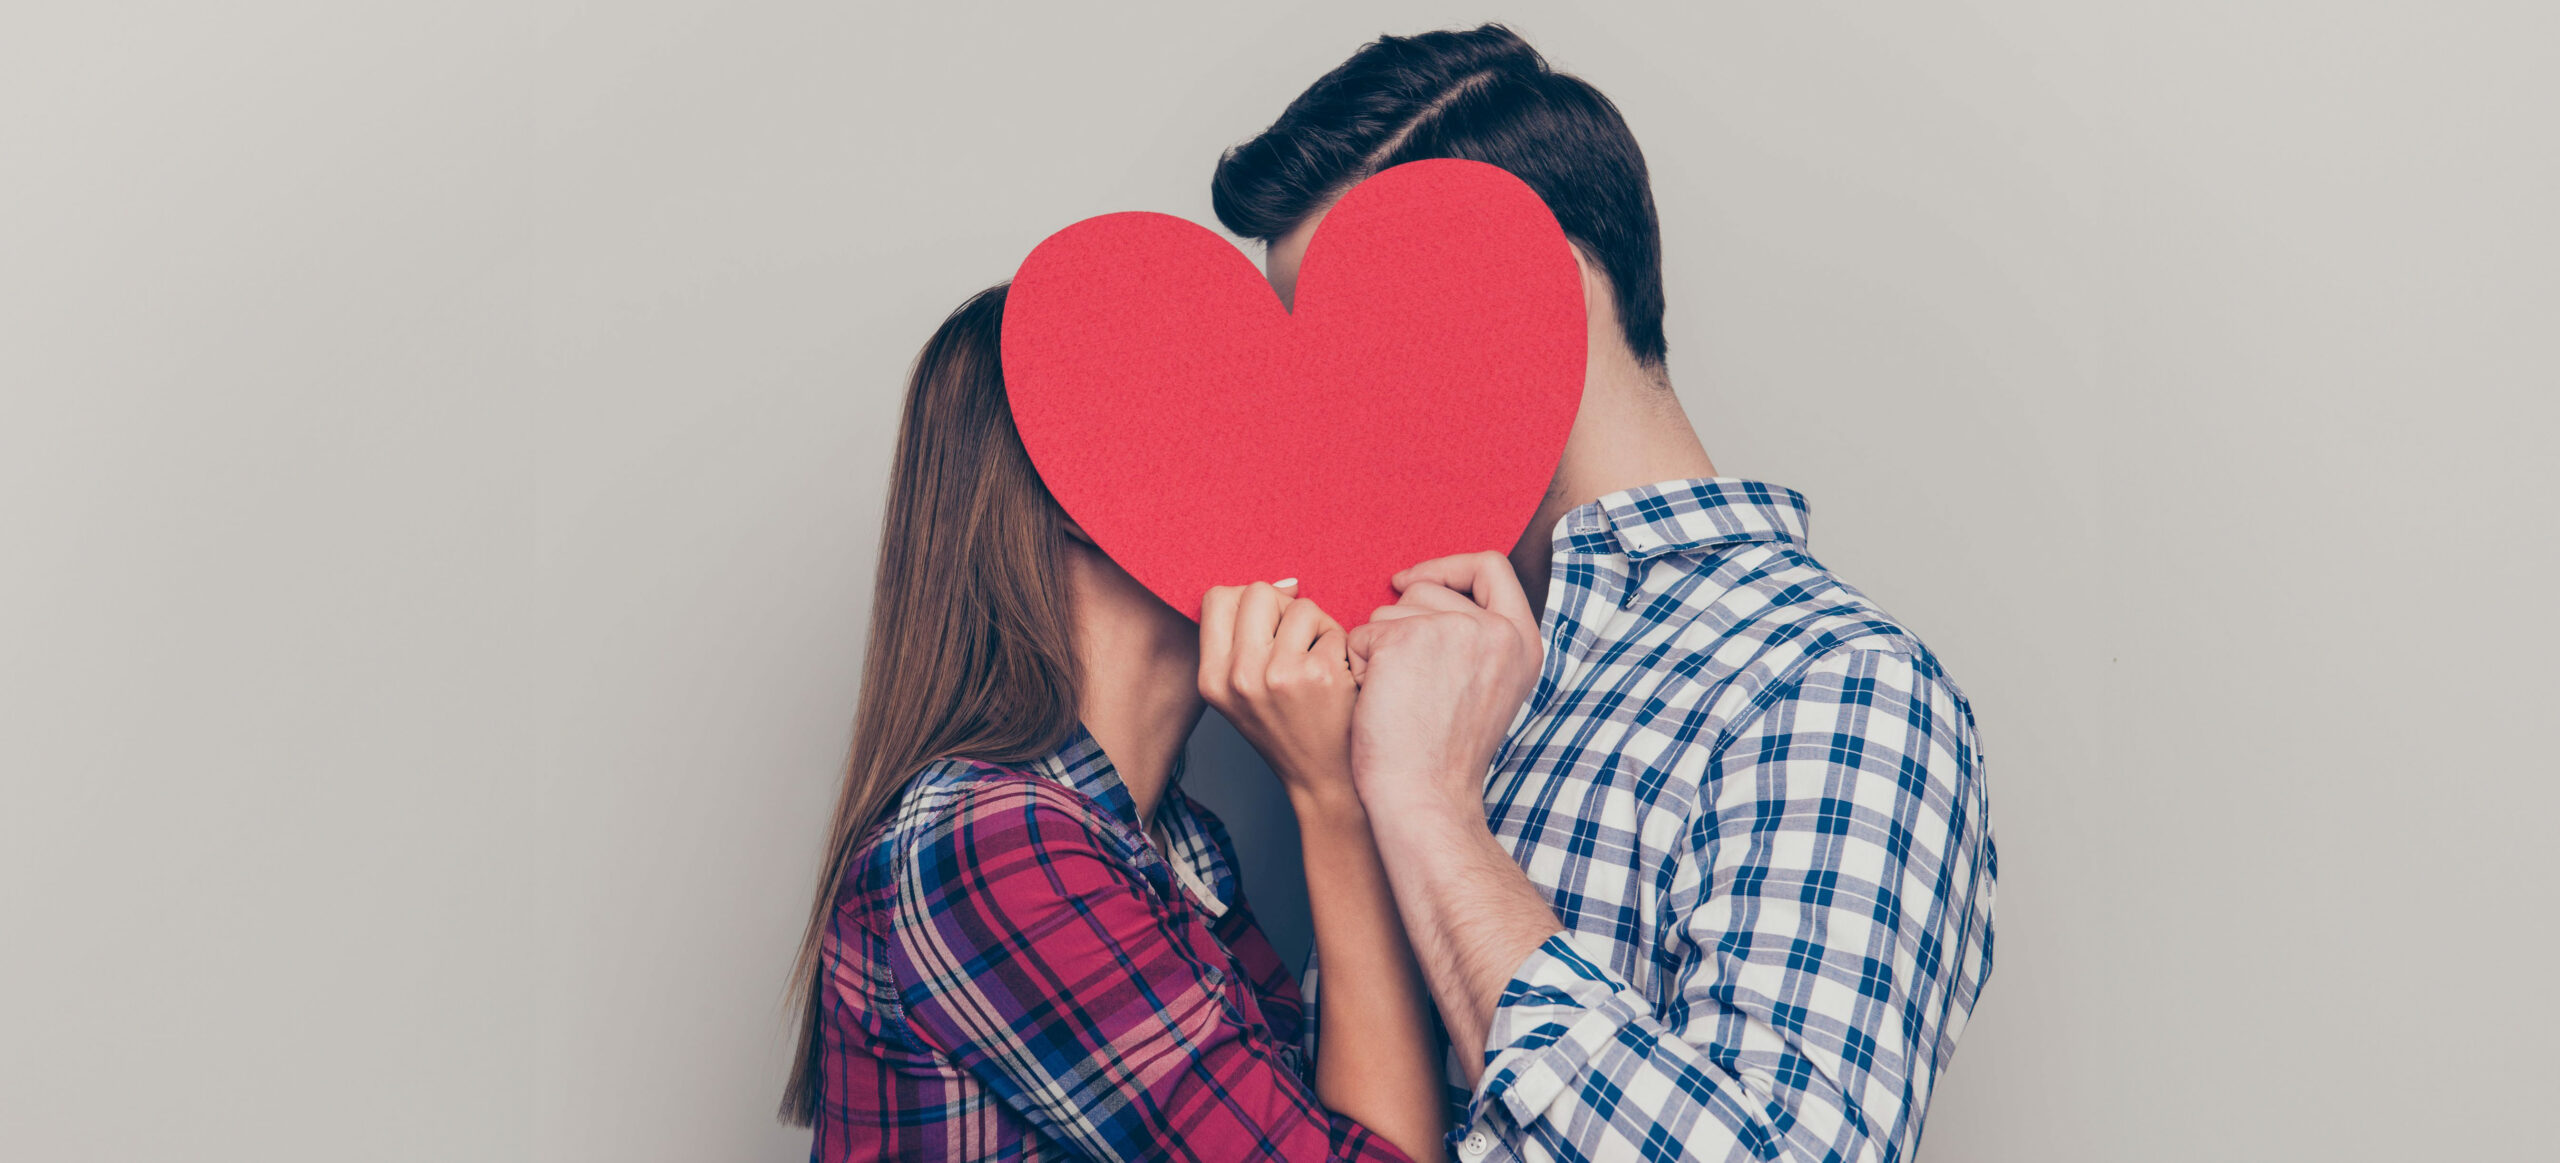 Ein Paar mit karierten Hemden küsst sich hinter einem roten Herz aus Papier und grauem Hintergrund.